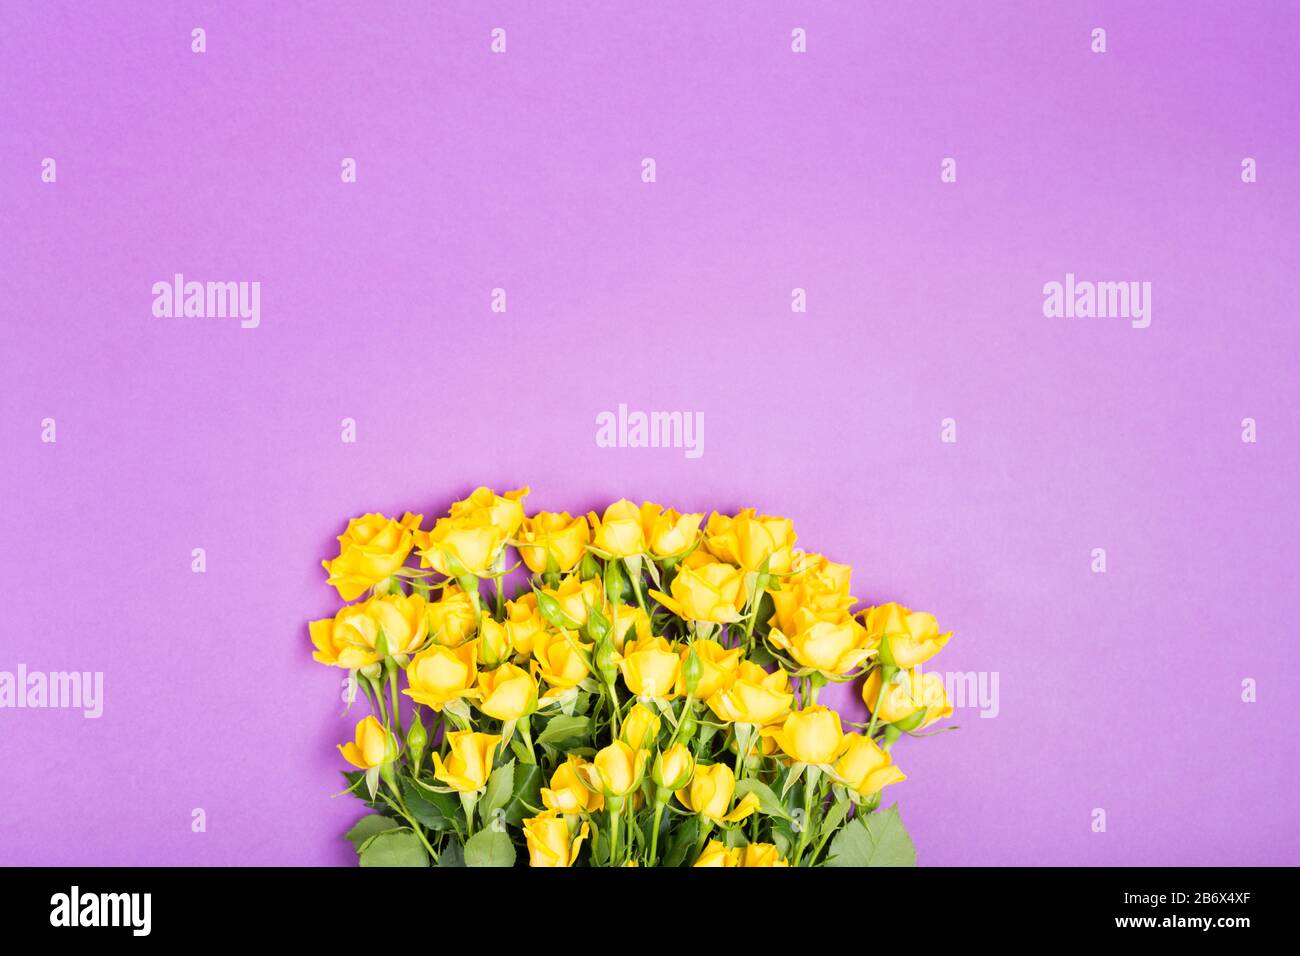 Sommerkonzept im Frühjahr mit gelben röhrigen Blumen auf violettem Tischhintergrund Draufsicht Freiraum Kopier Platz romantisch Stockfoto